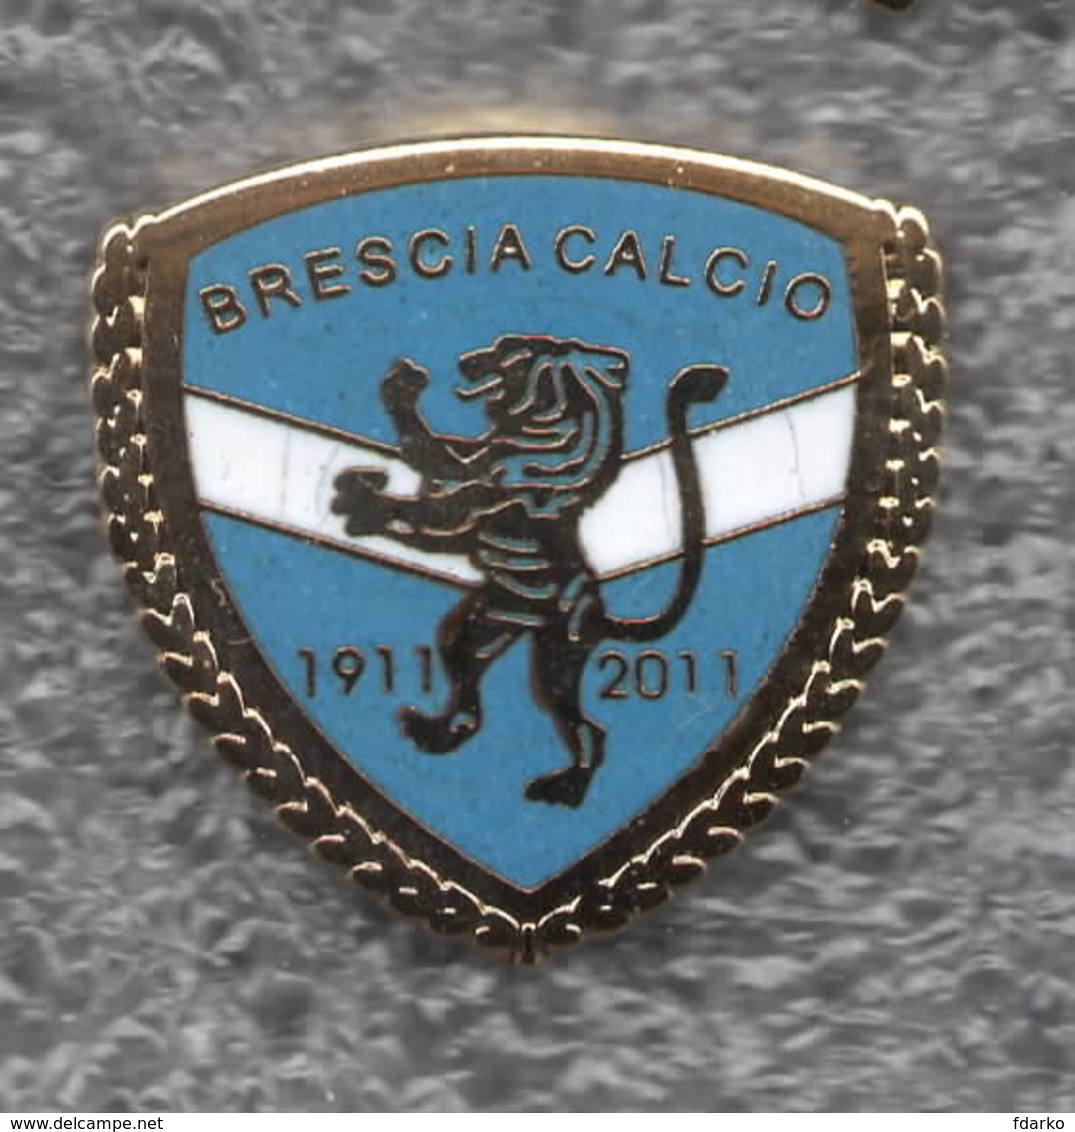 Brescia Calcio Distintivi FootBall Soccer Pins Spilla Italy Iper Zola - Voetbal